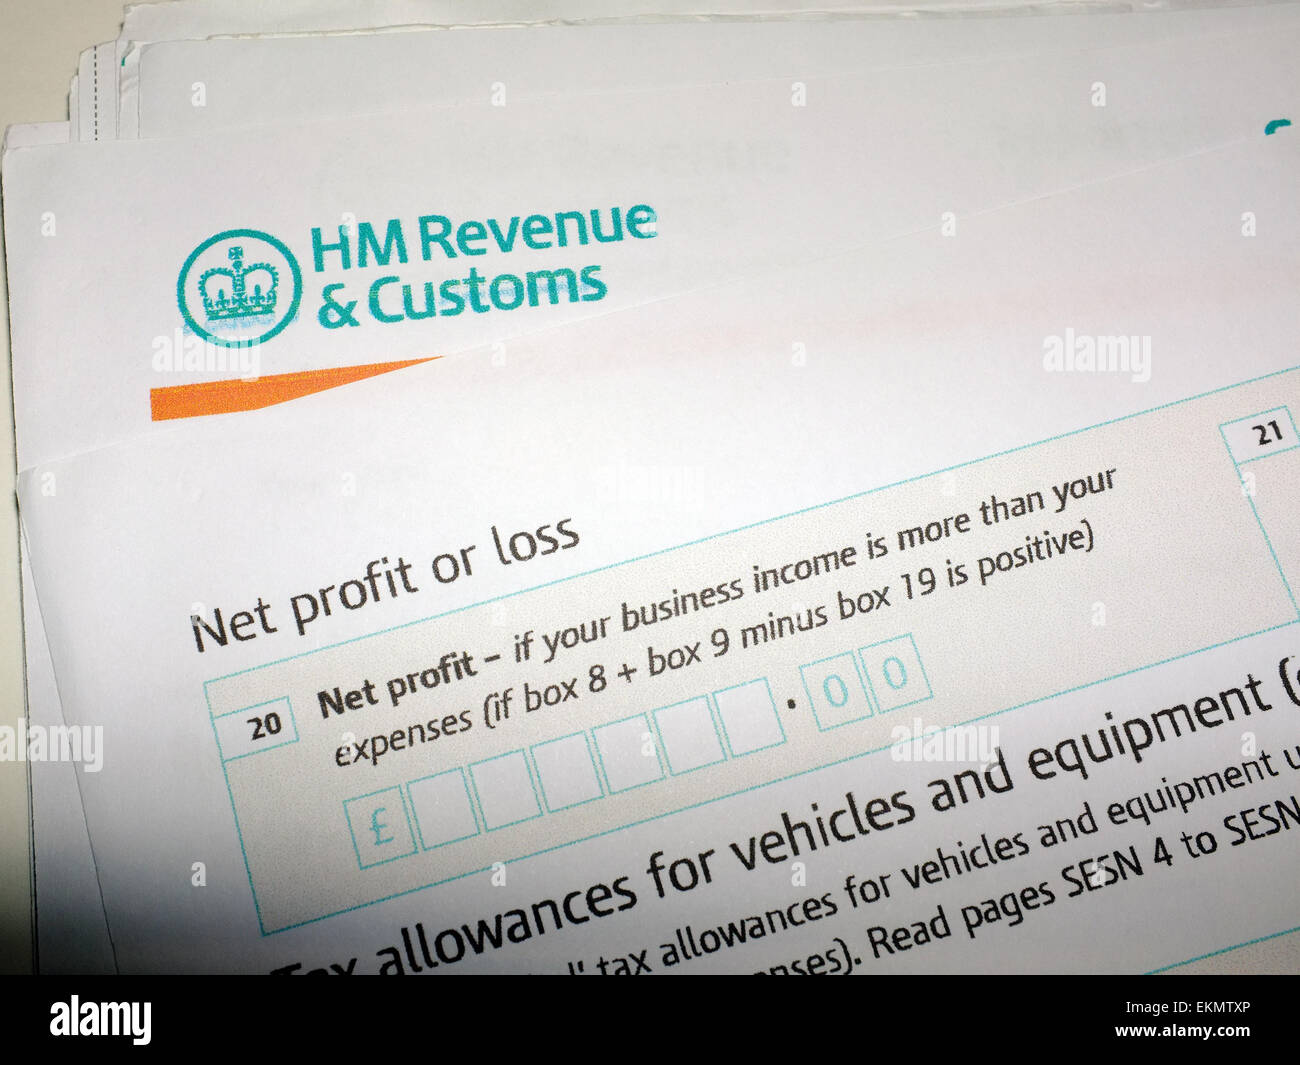 Hm Revenue And Customs Tax Rebate Address